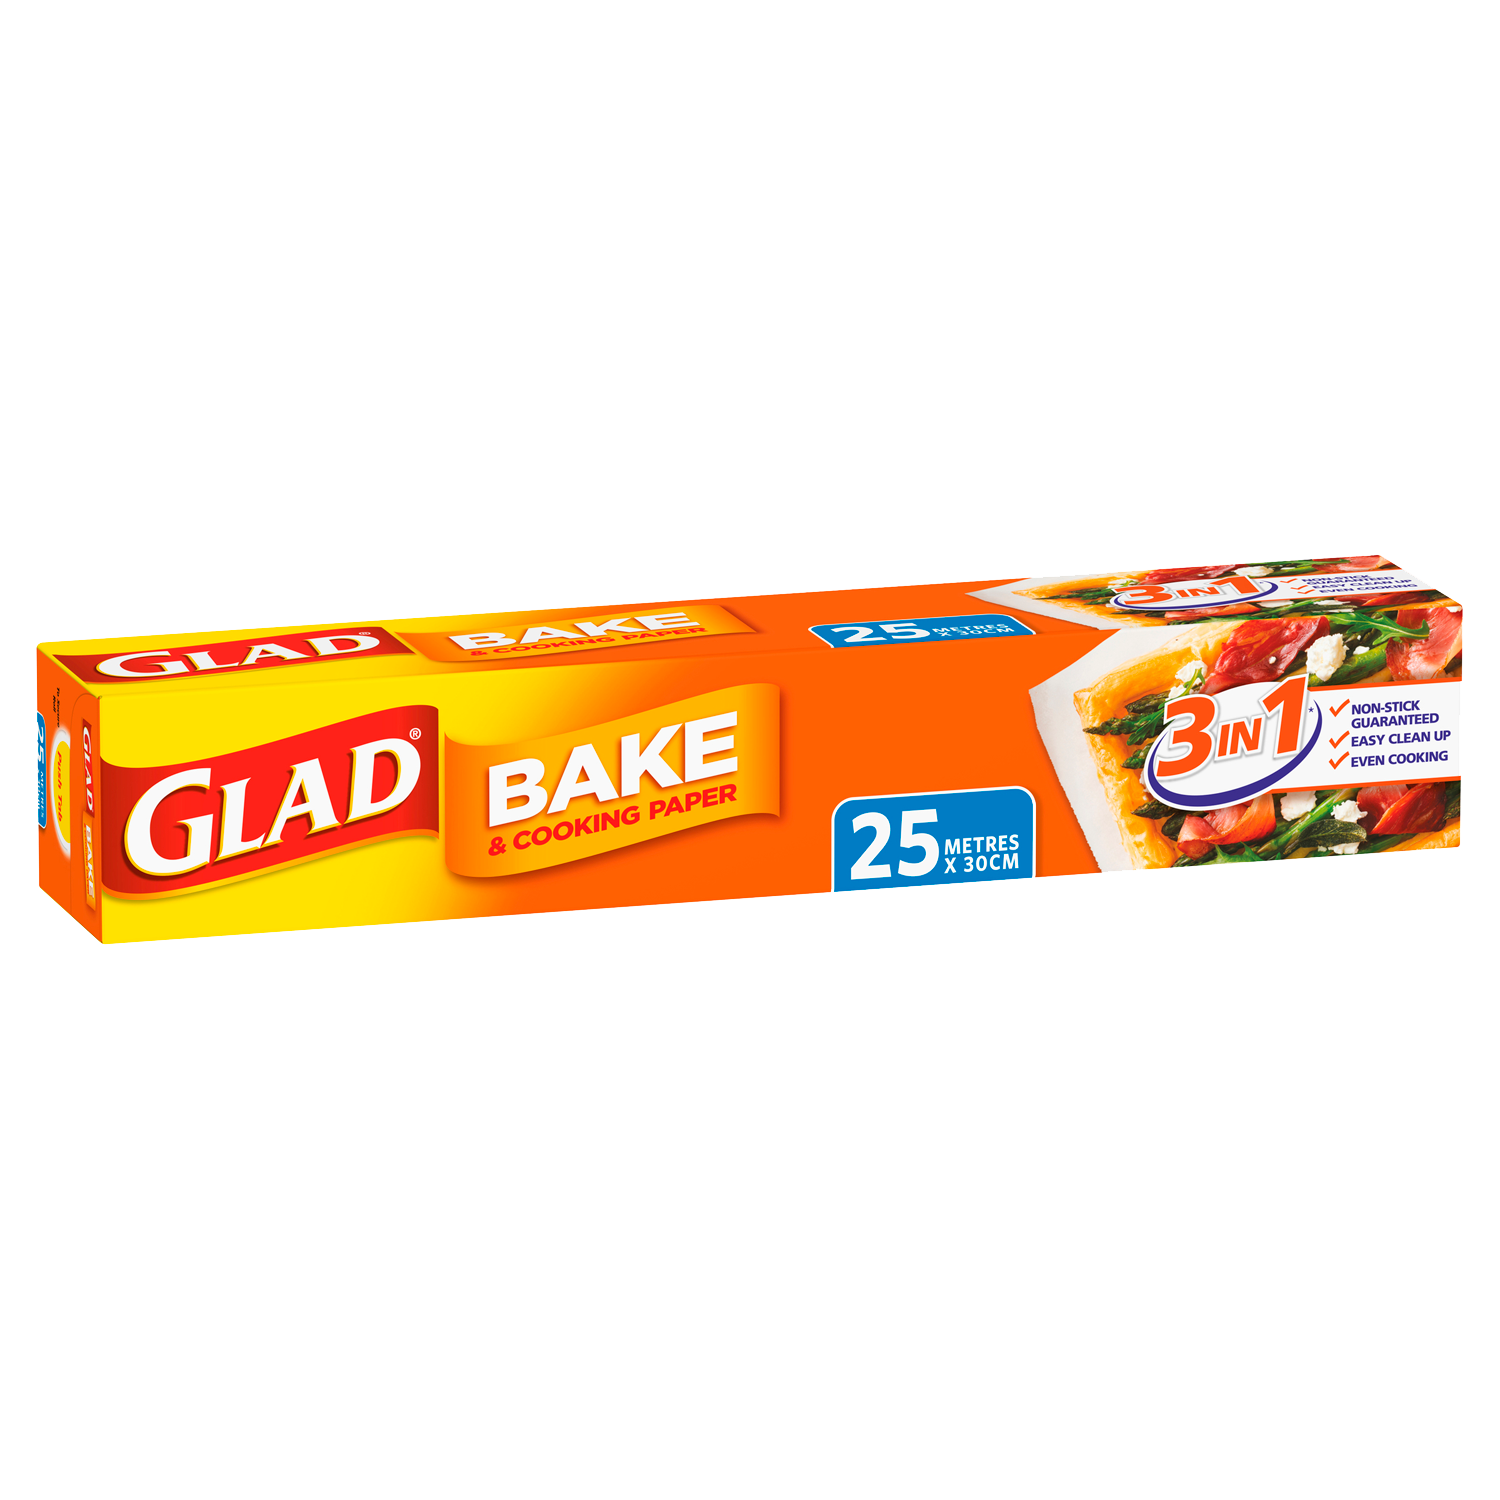 https://www.glad.com.au/wp-content/uploads/sites/2/2022/05/Glad-Bake-25m.png